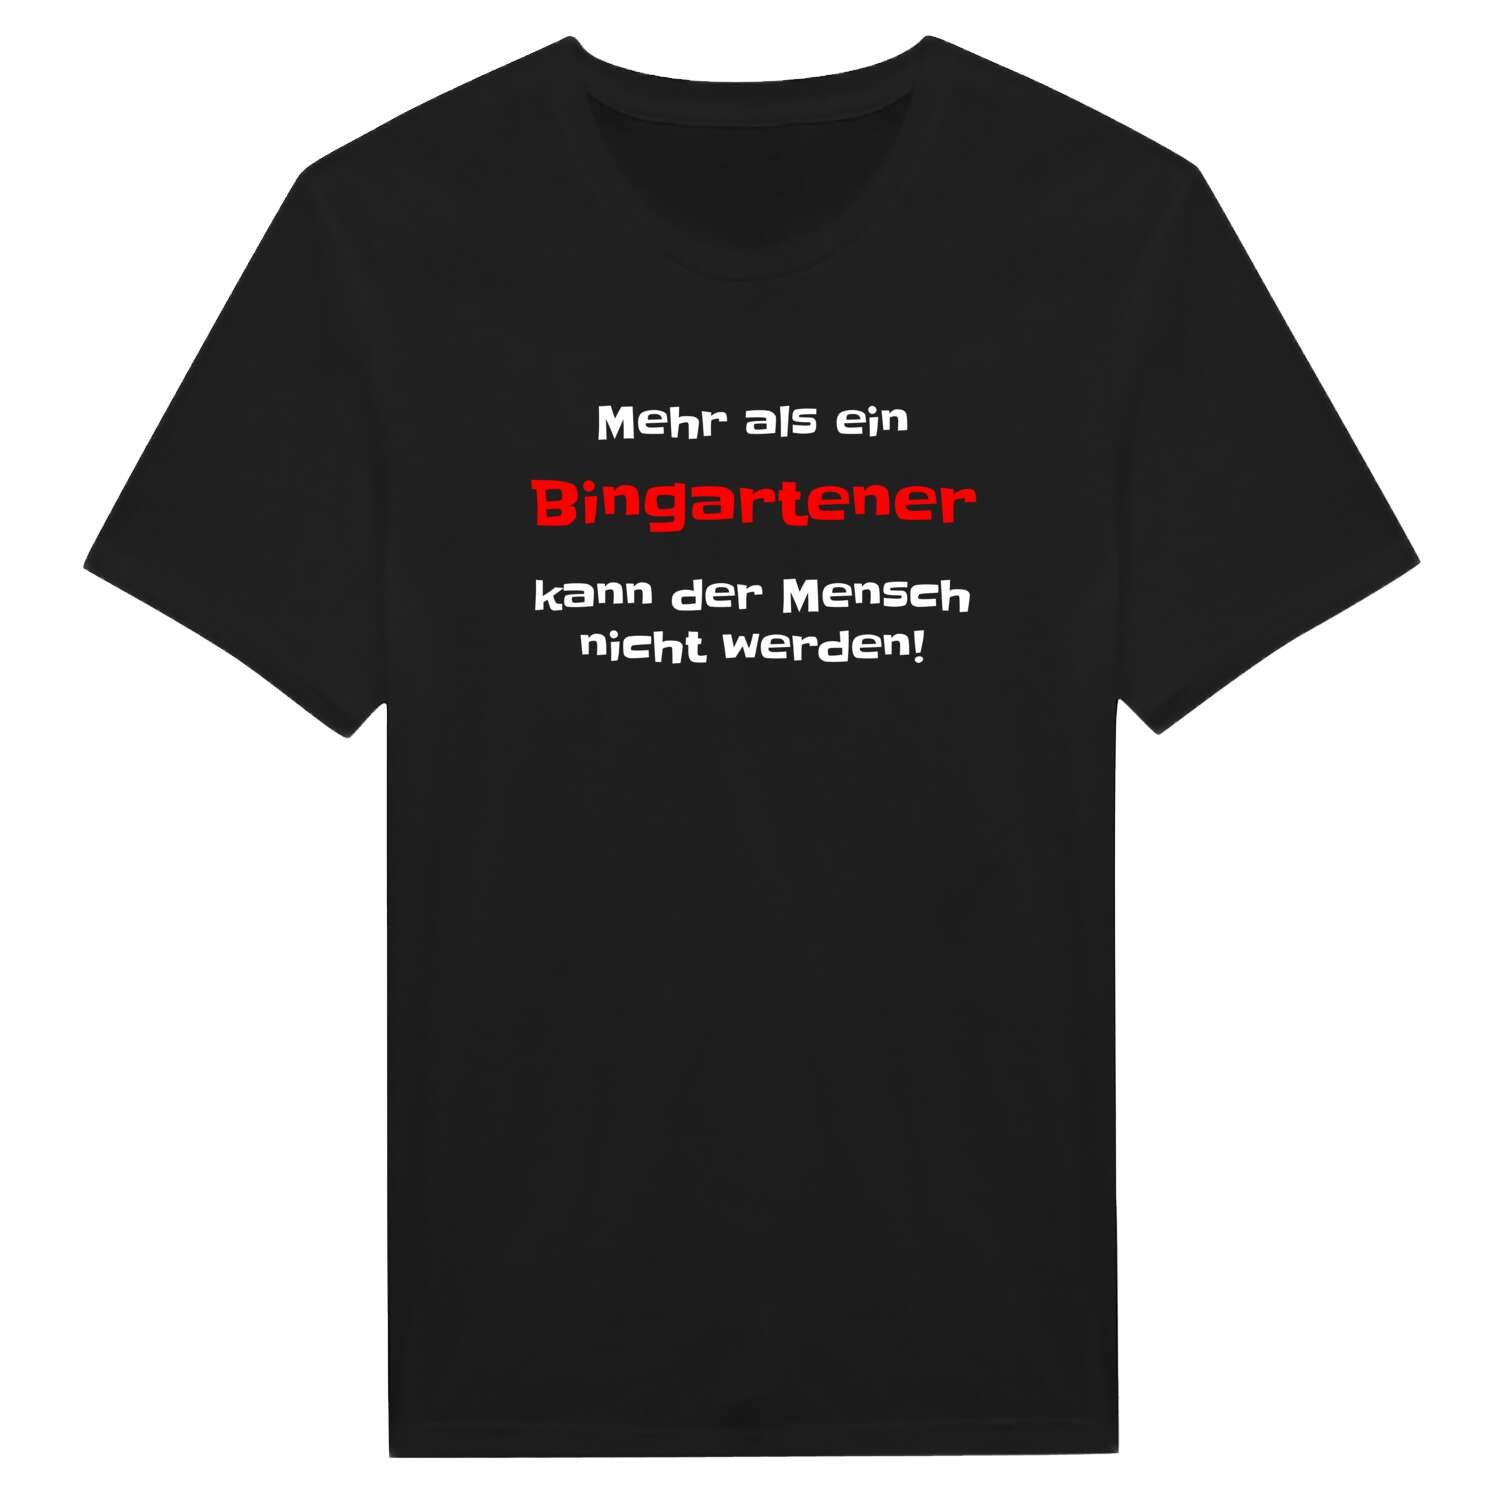 Bingarten T-Shirt »Mehr als ein«